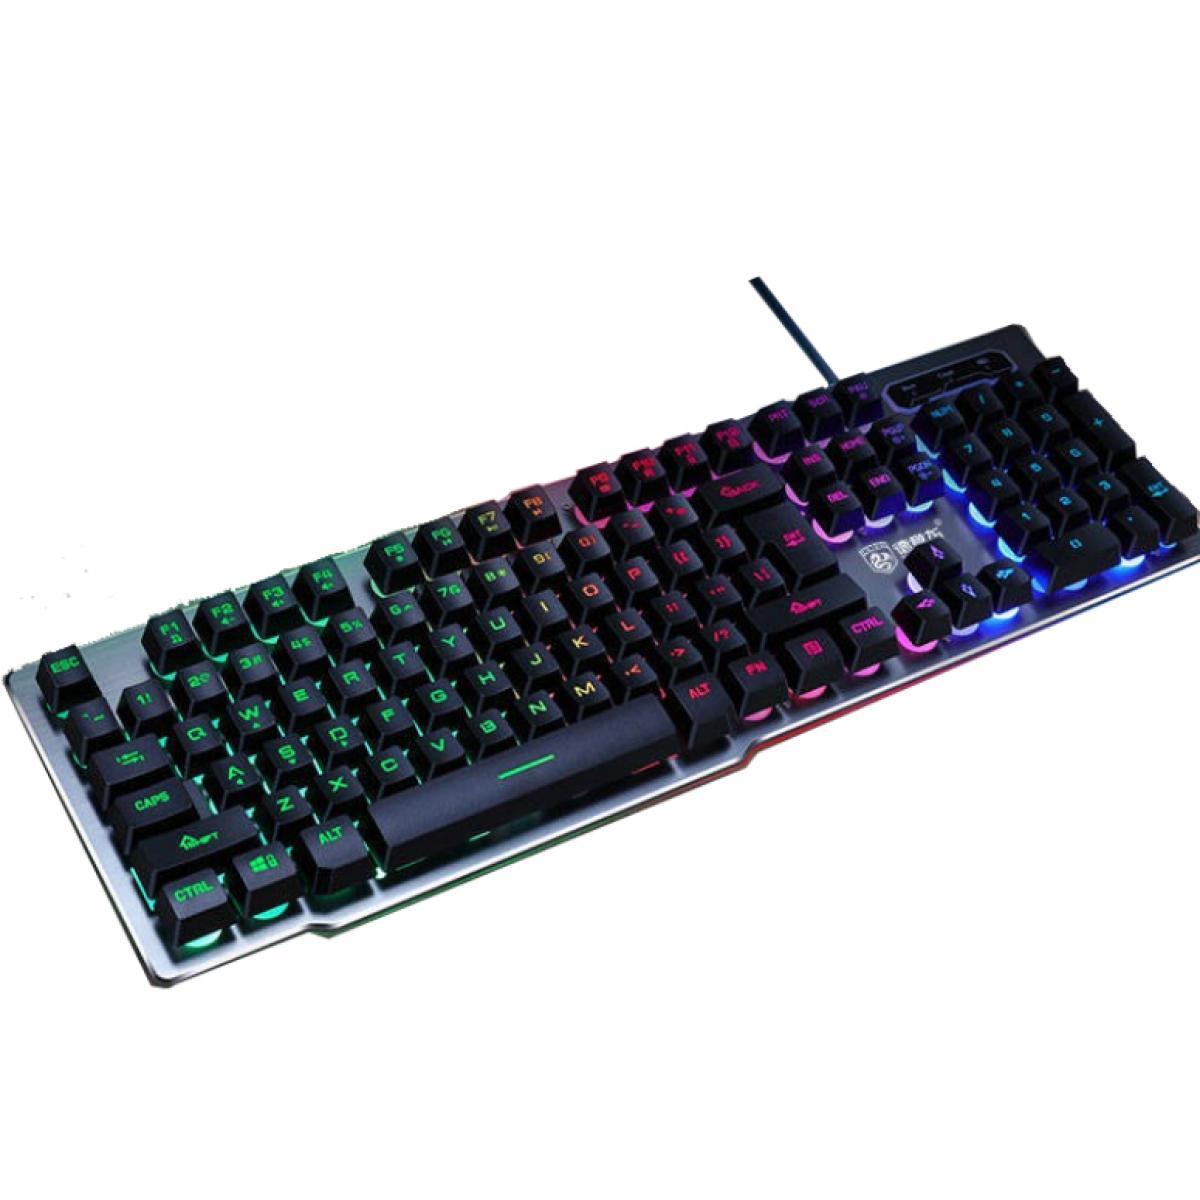 Deiog DY-M708 Wired Gaming Keyboard-Black